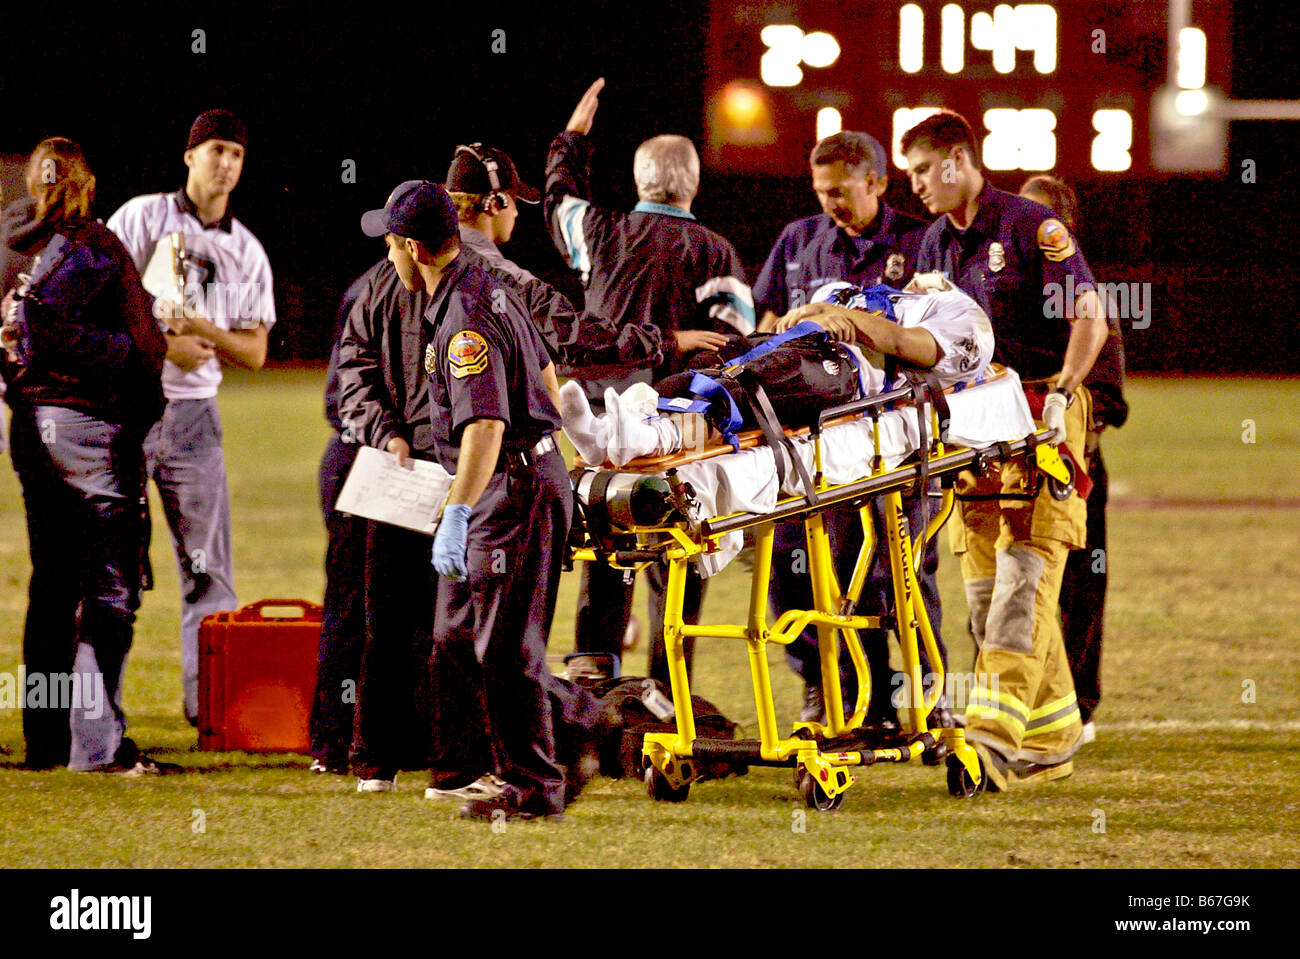 Les ambulanciers transportant un joueur blessé dans le sud de la Californie, USA Banque D'Images